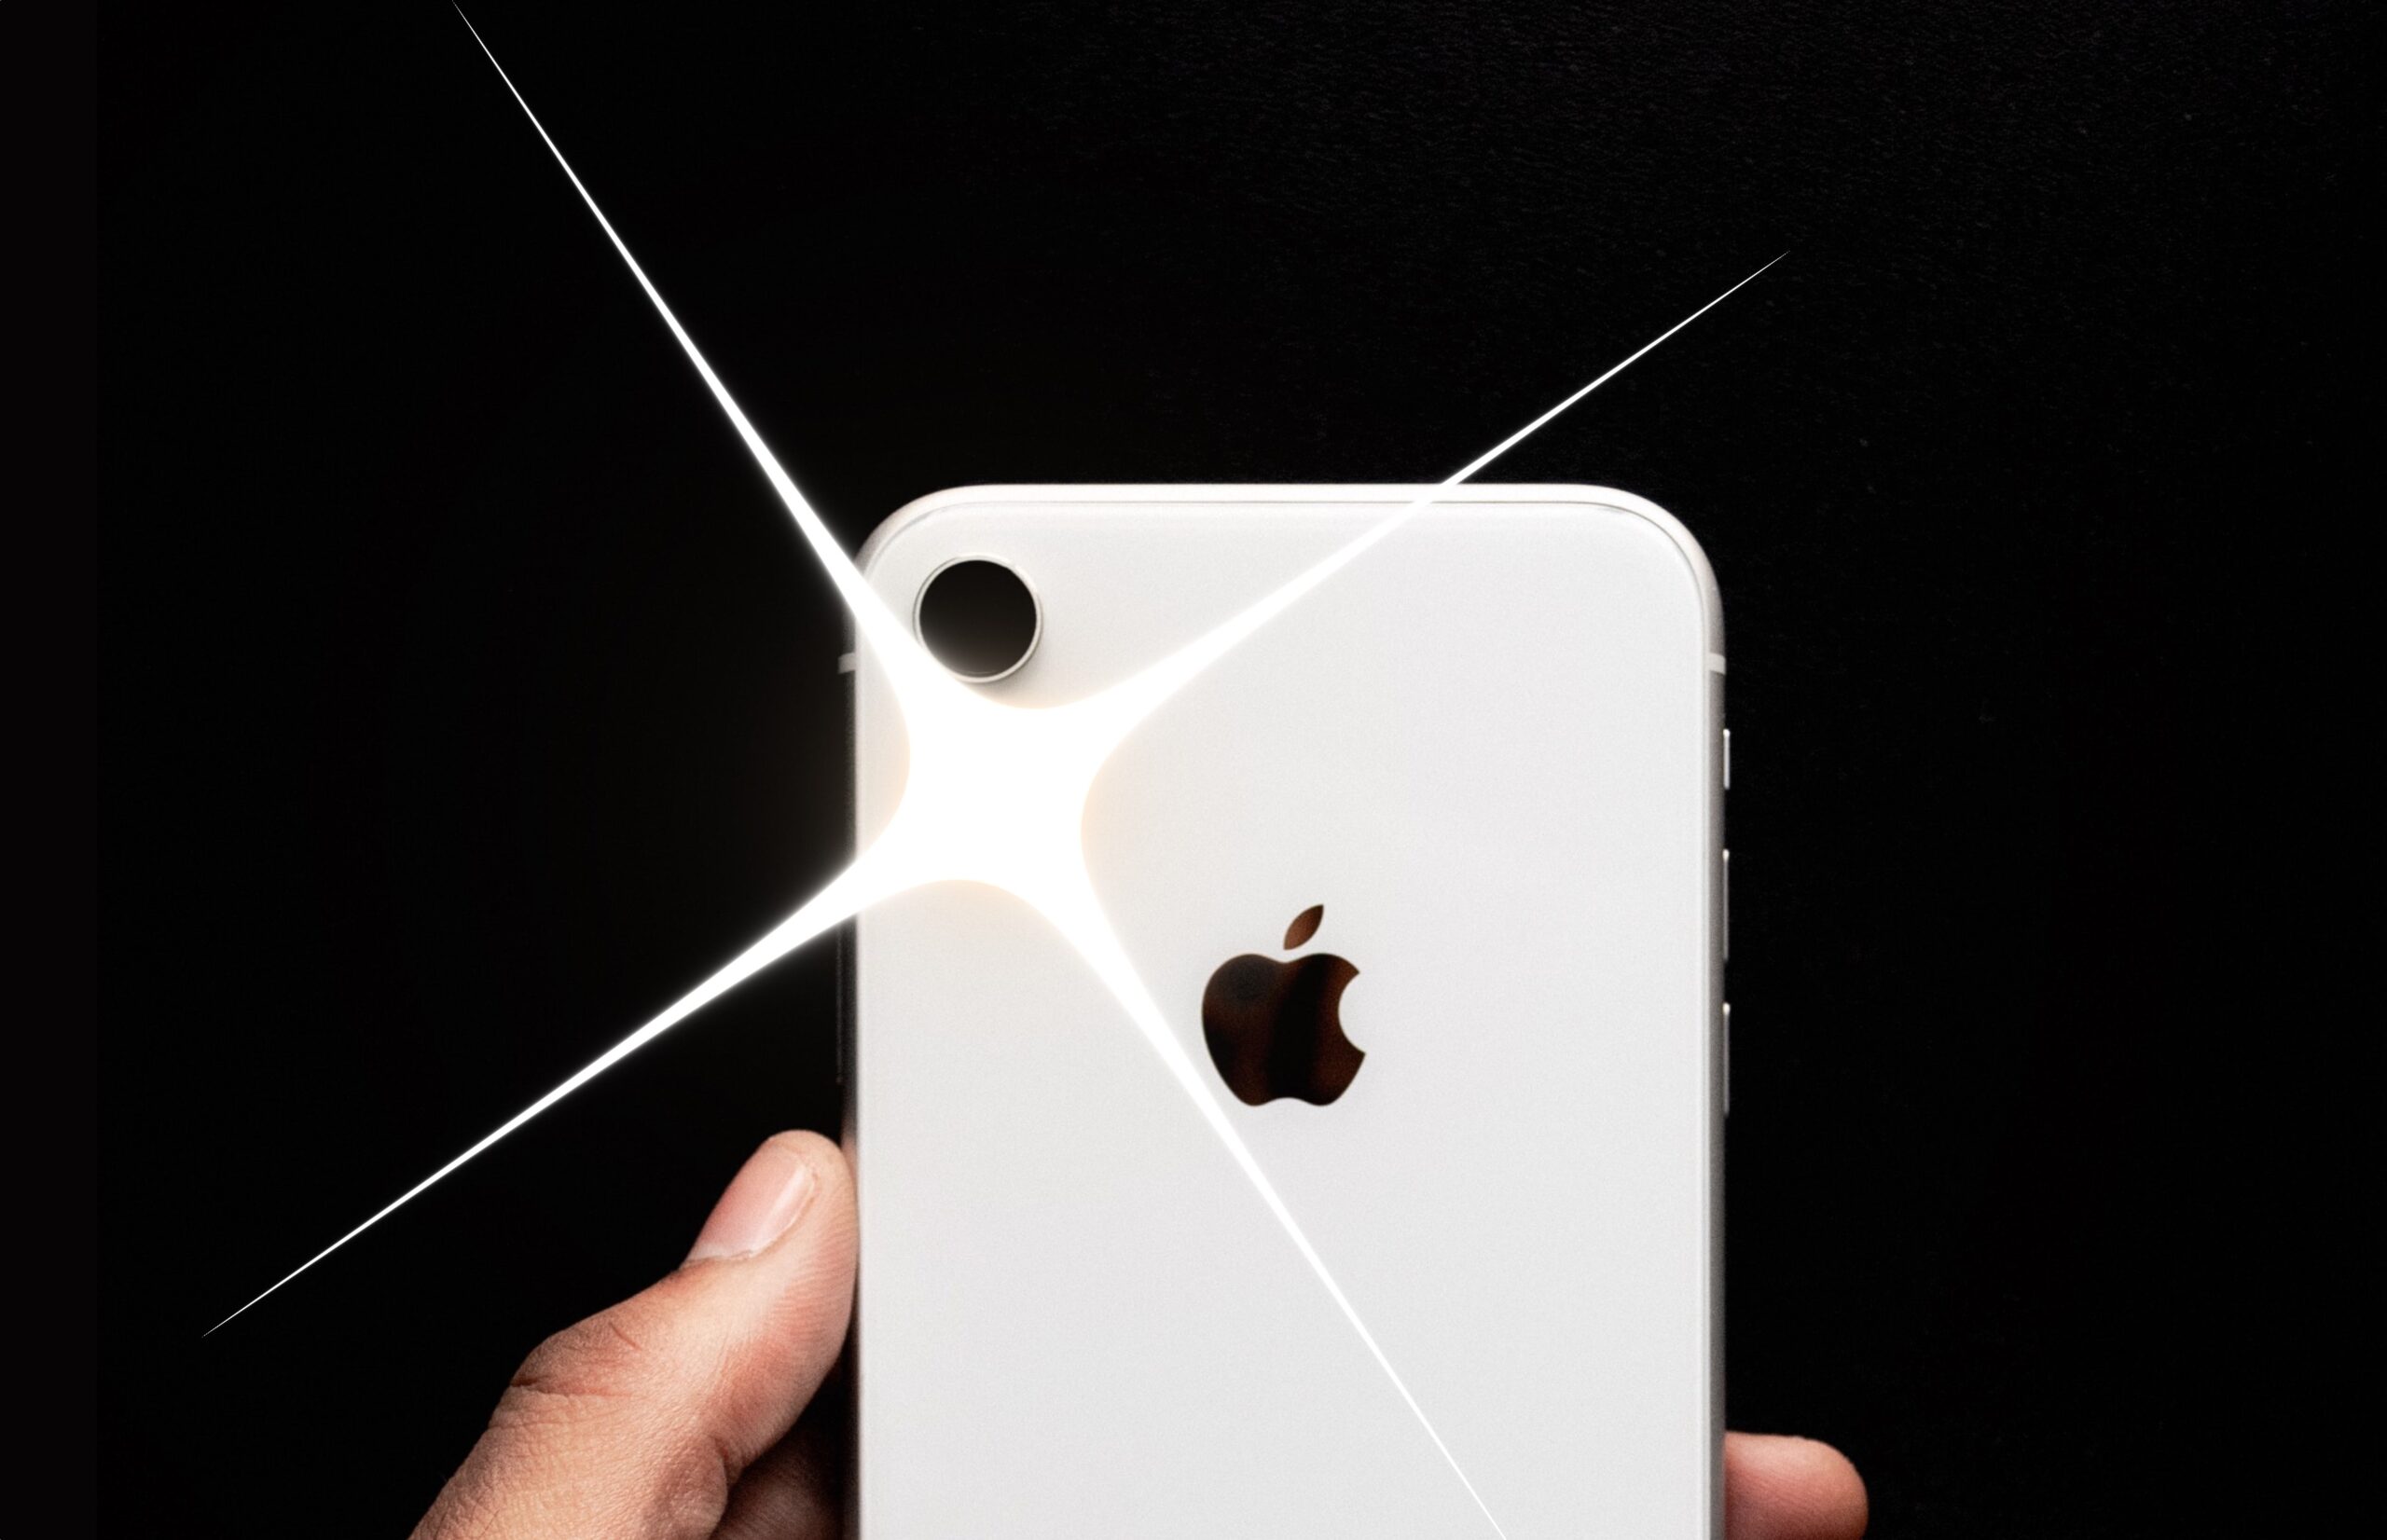 iPhone als zaklamp gebruiken: 3 eenvoudige manieren